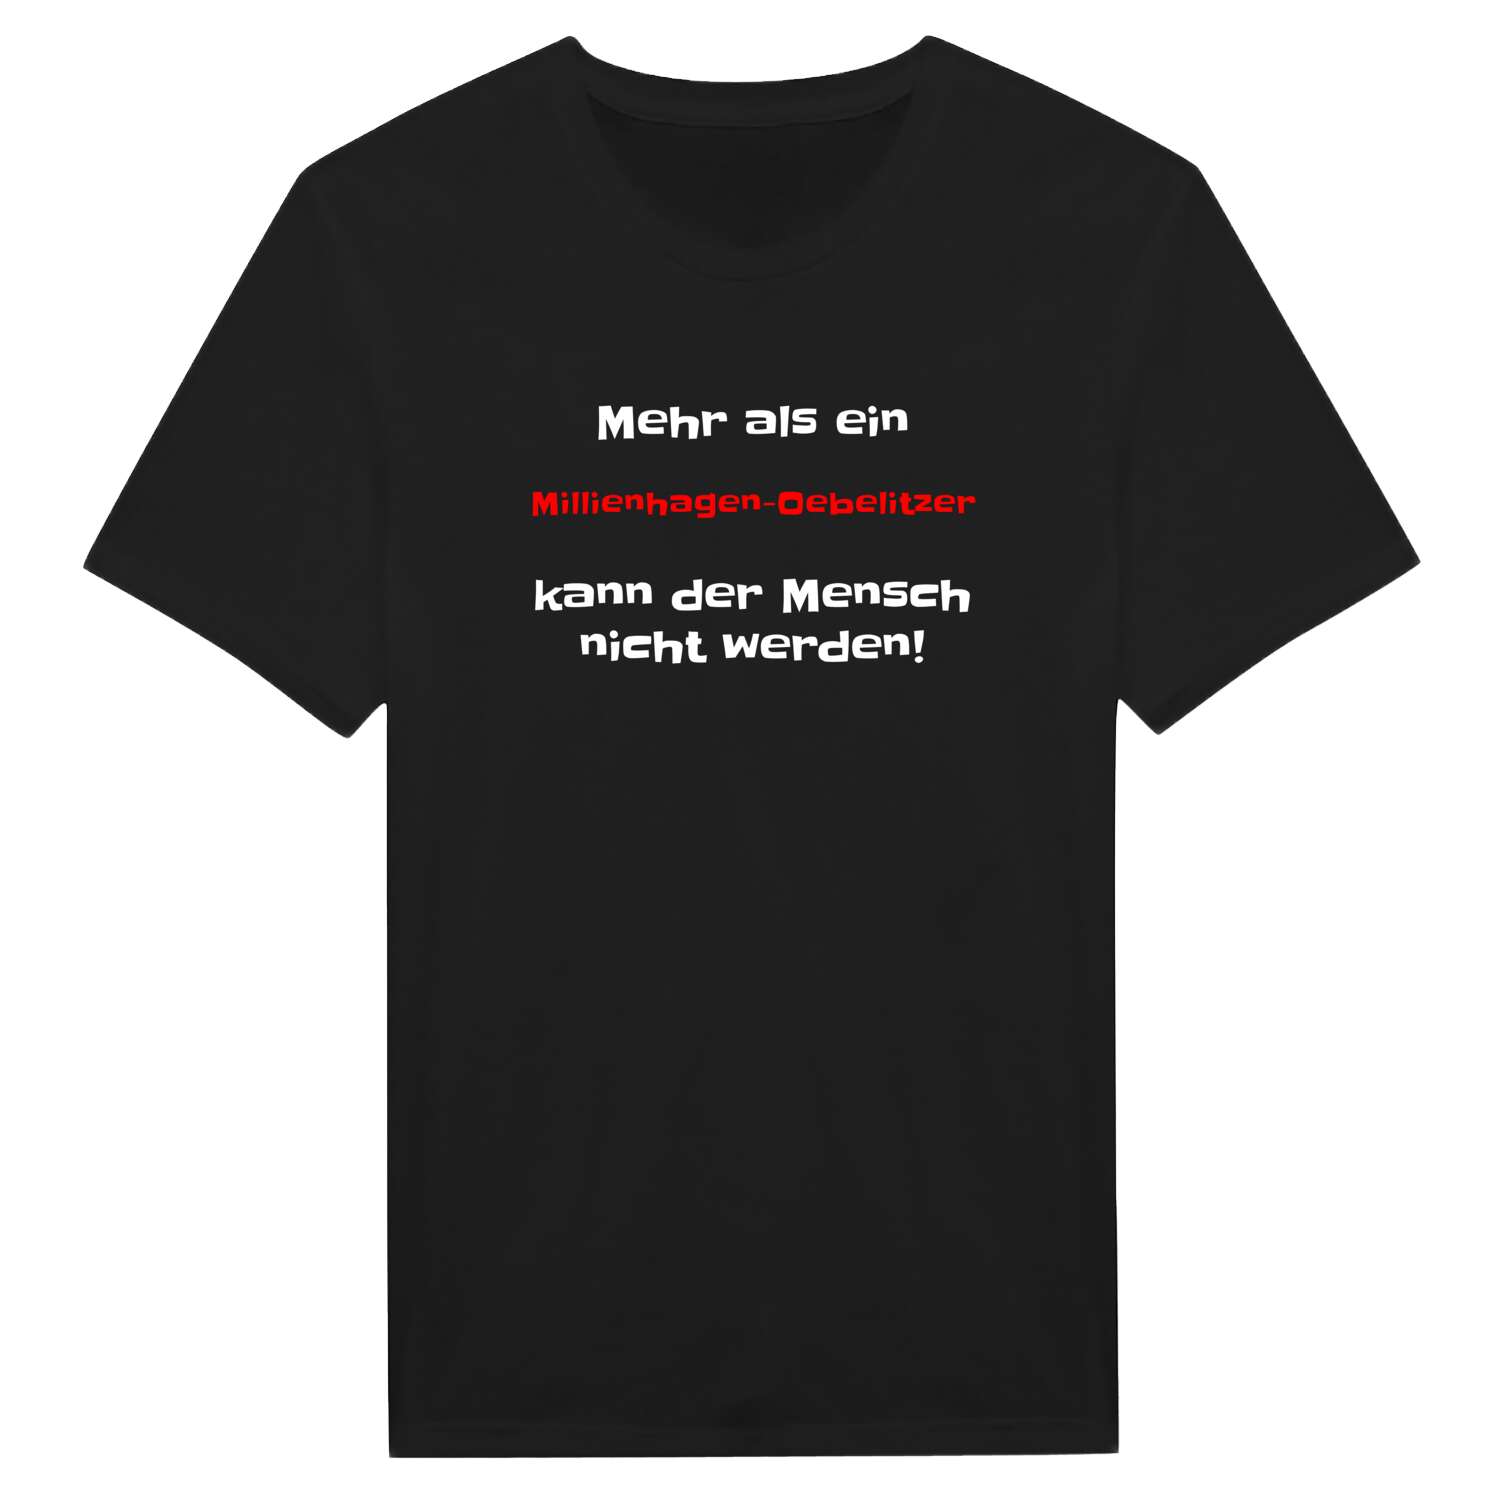 Millienhagen-Oebelitz T-Shirt »Mehr als ein«